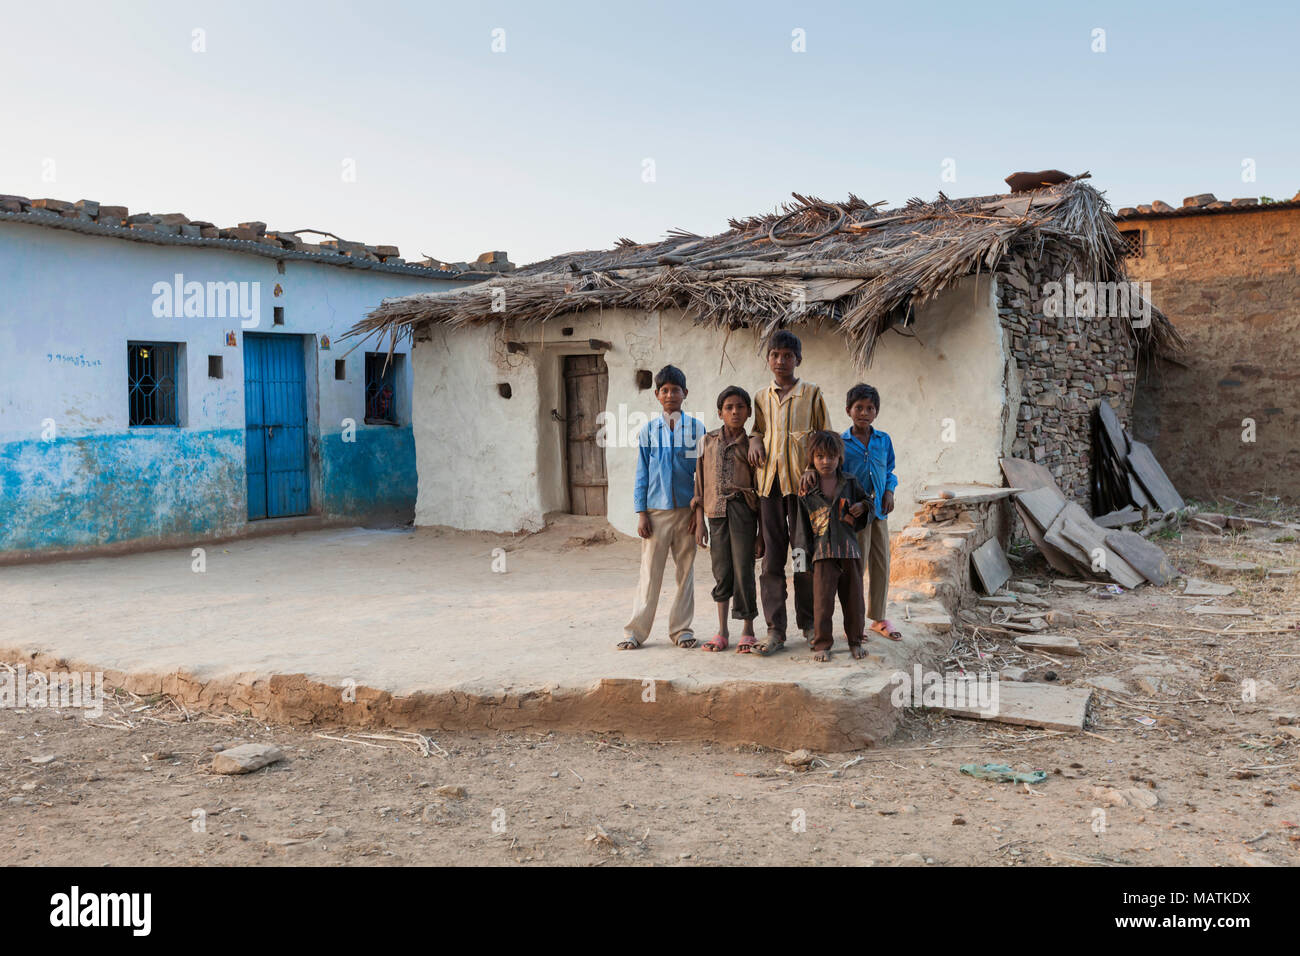 Cinq enfants de la tribu Bhil se tiennent à l'extérieur d'une maison traditionnelle près de Bhainsrorgarh, les zones rurales du Rajasthan, en Inde. Banque D'Images